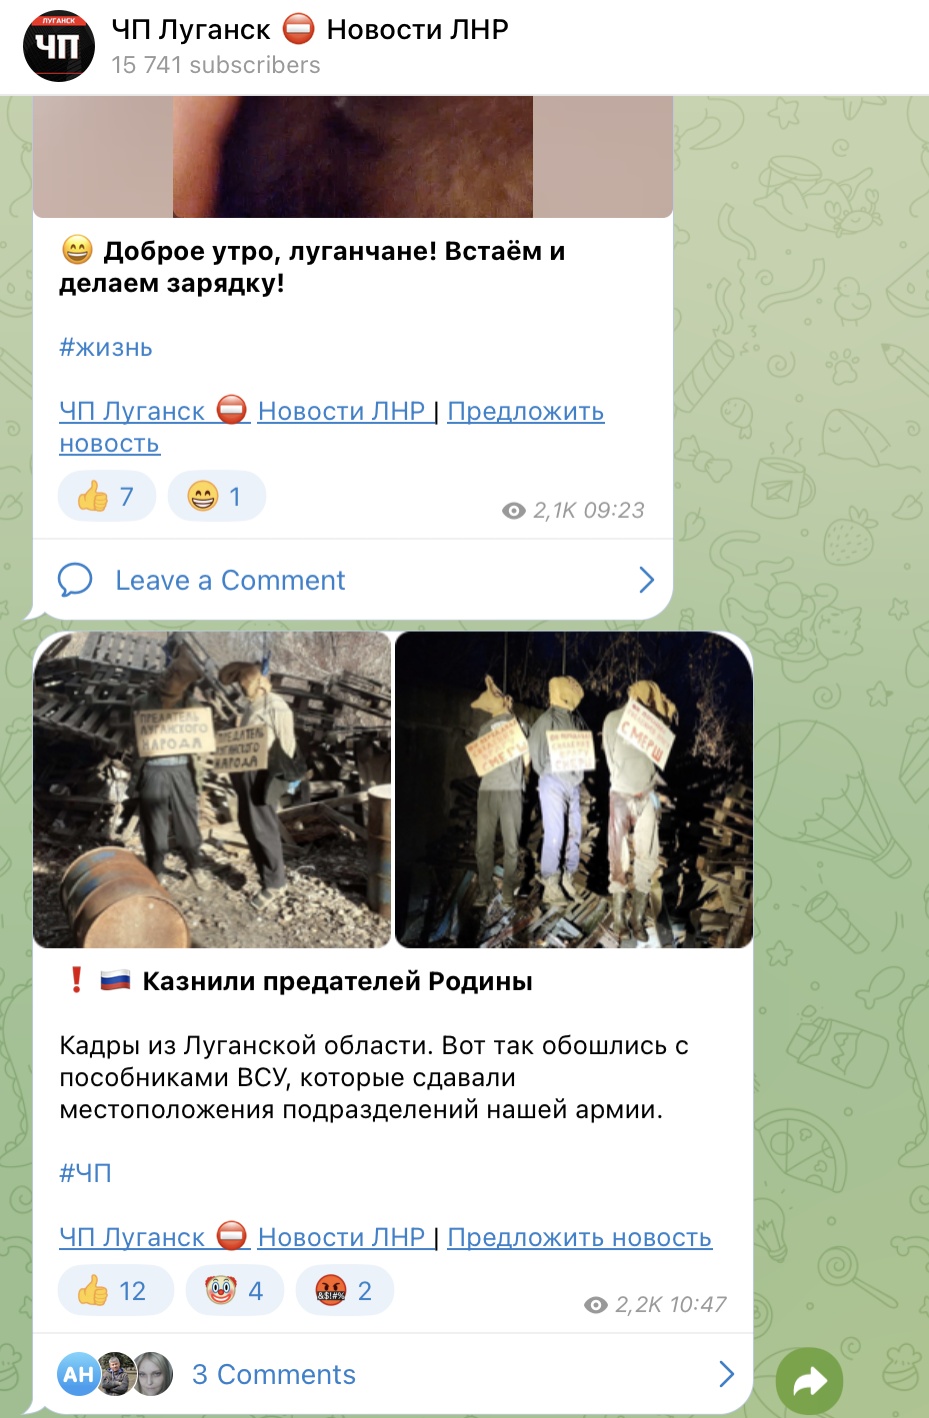 «Повешенные в ЛНР» – очередная «Буча» украинской стороны